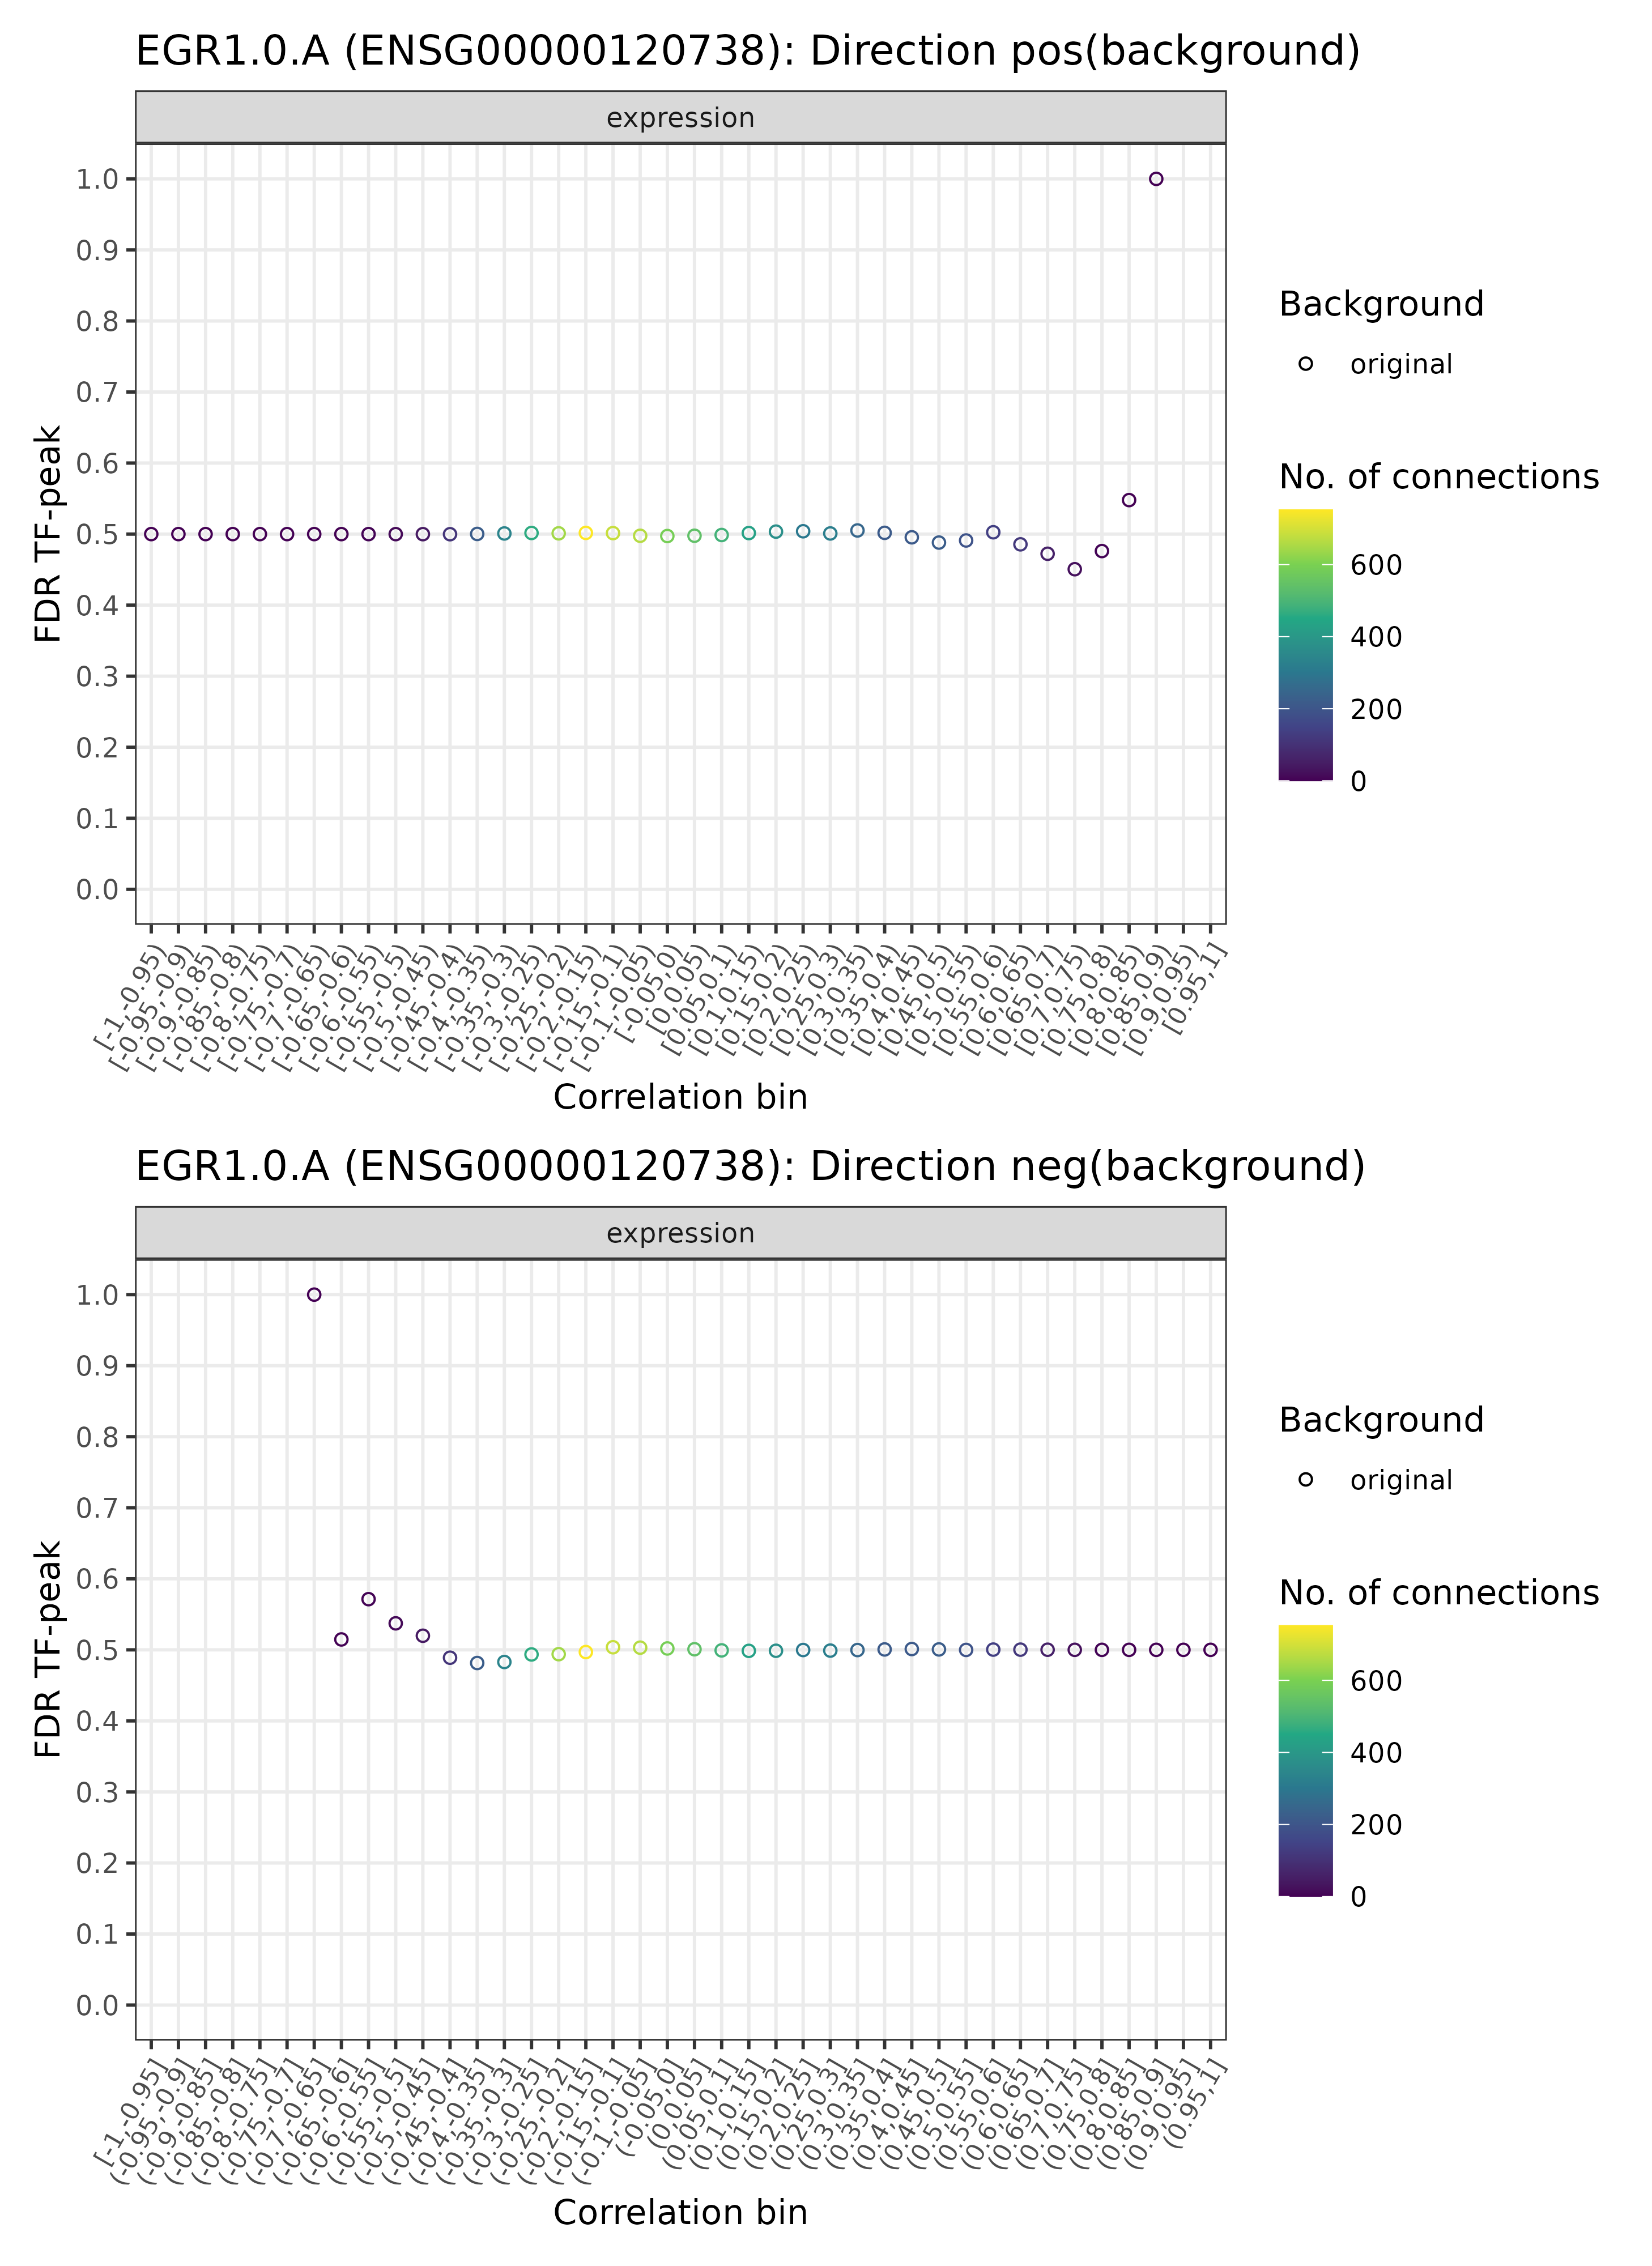 <i>TF-enhancer diagnostic plots for EGR1.0.A (background)</i>